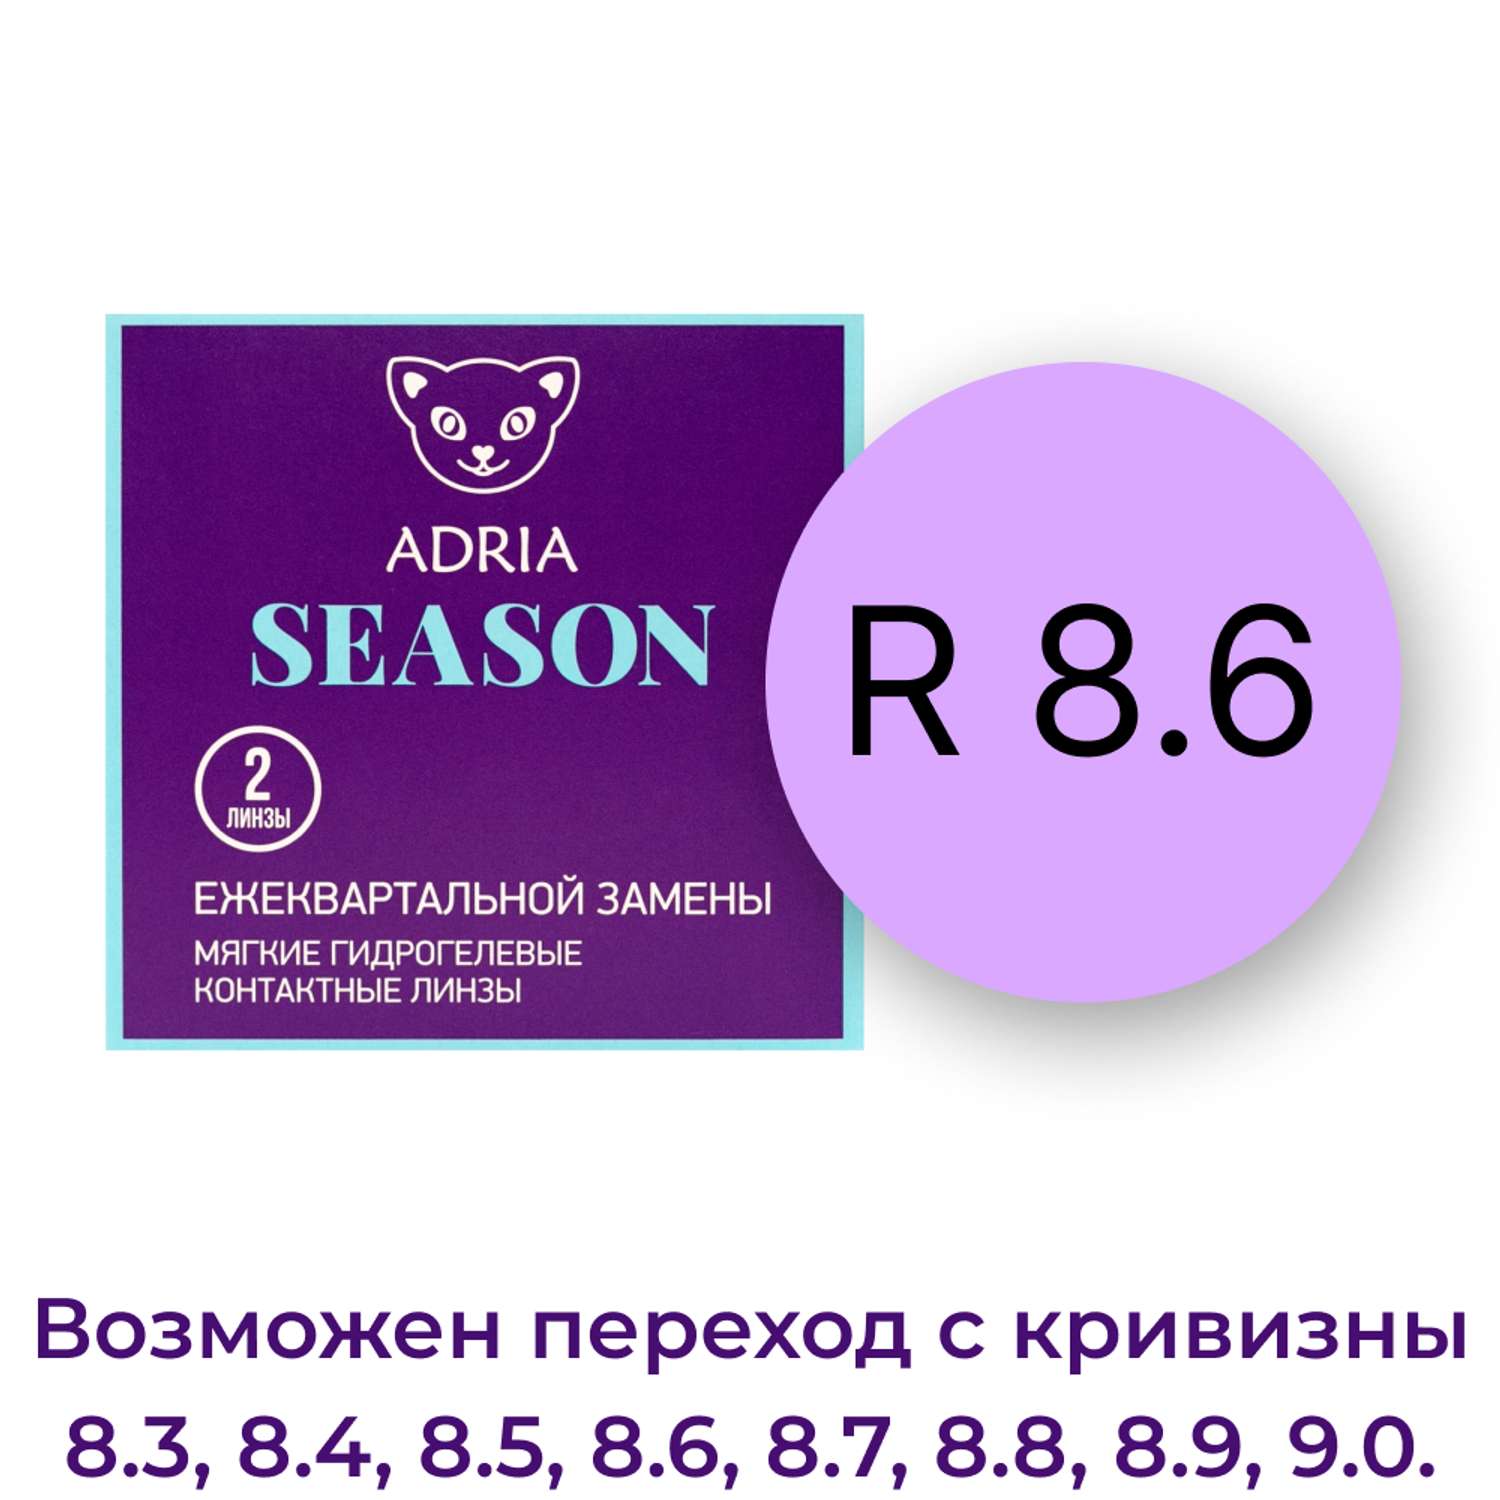 Контактные линзы ADRIA Season 2 линзы R 8.6 -2.50 - фото 3